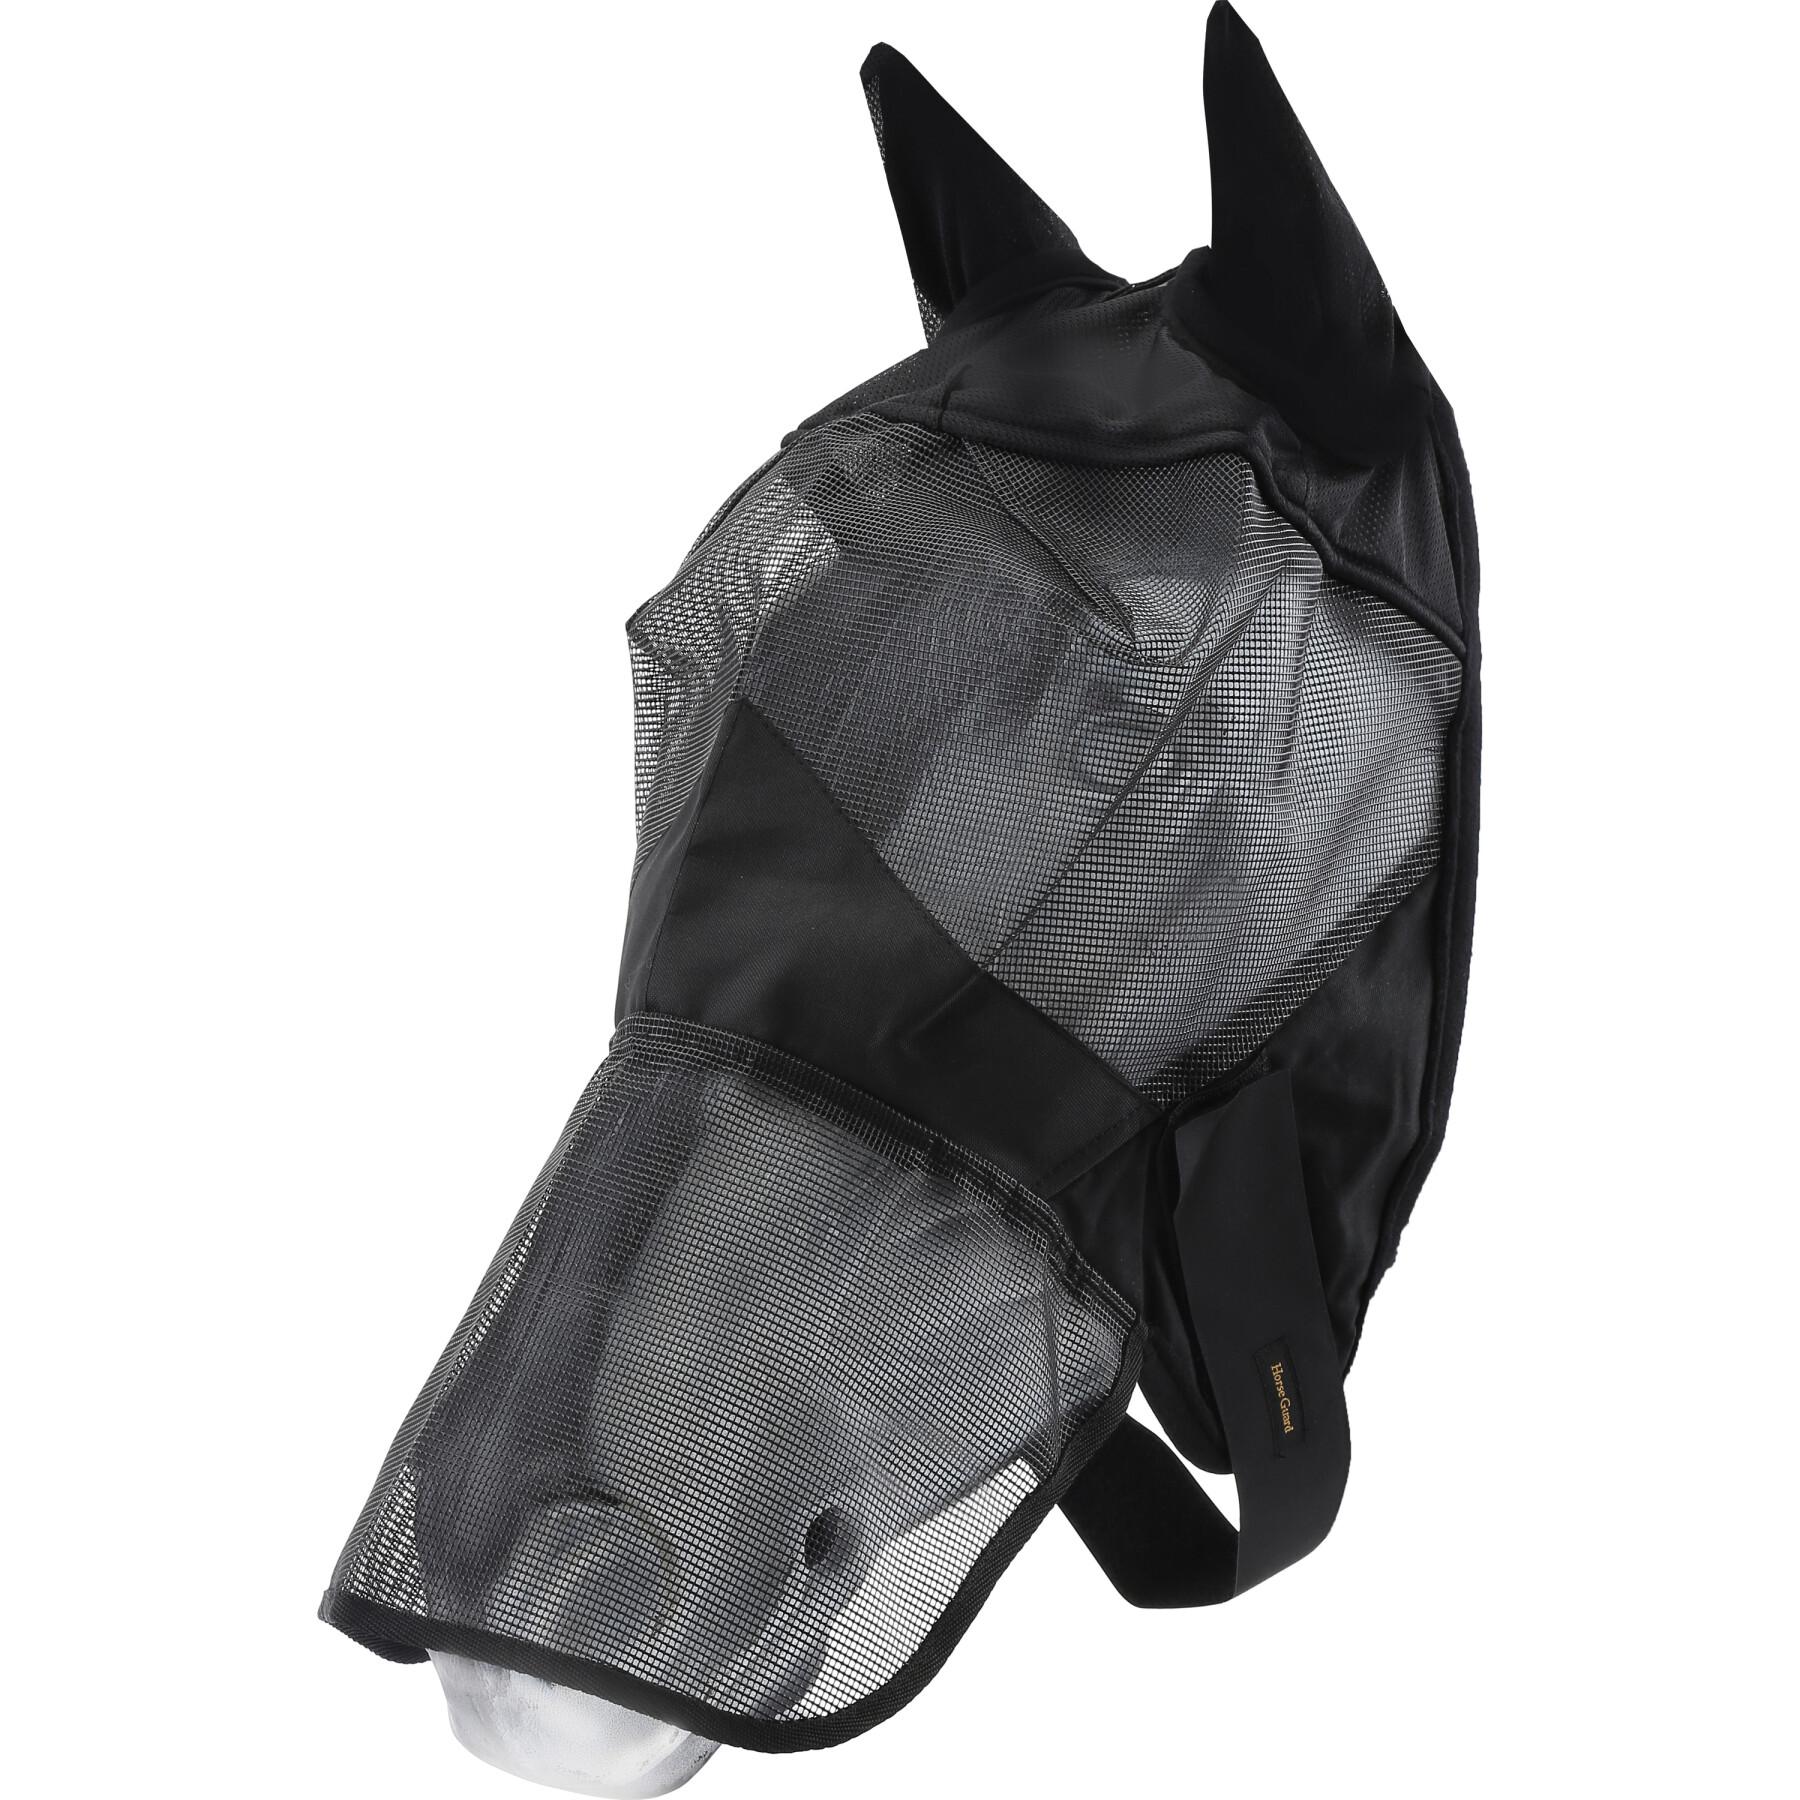 Máscara para caballos con puente nasal blando HorseGuard